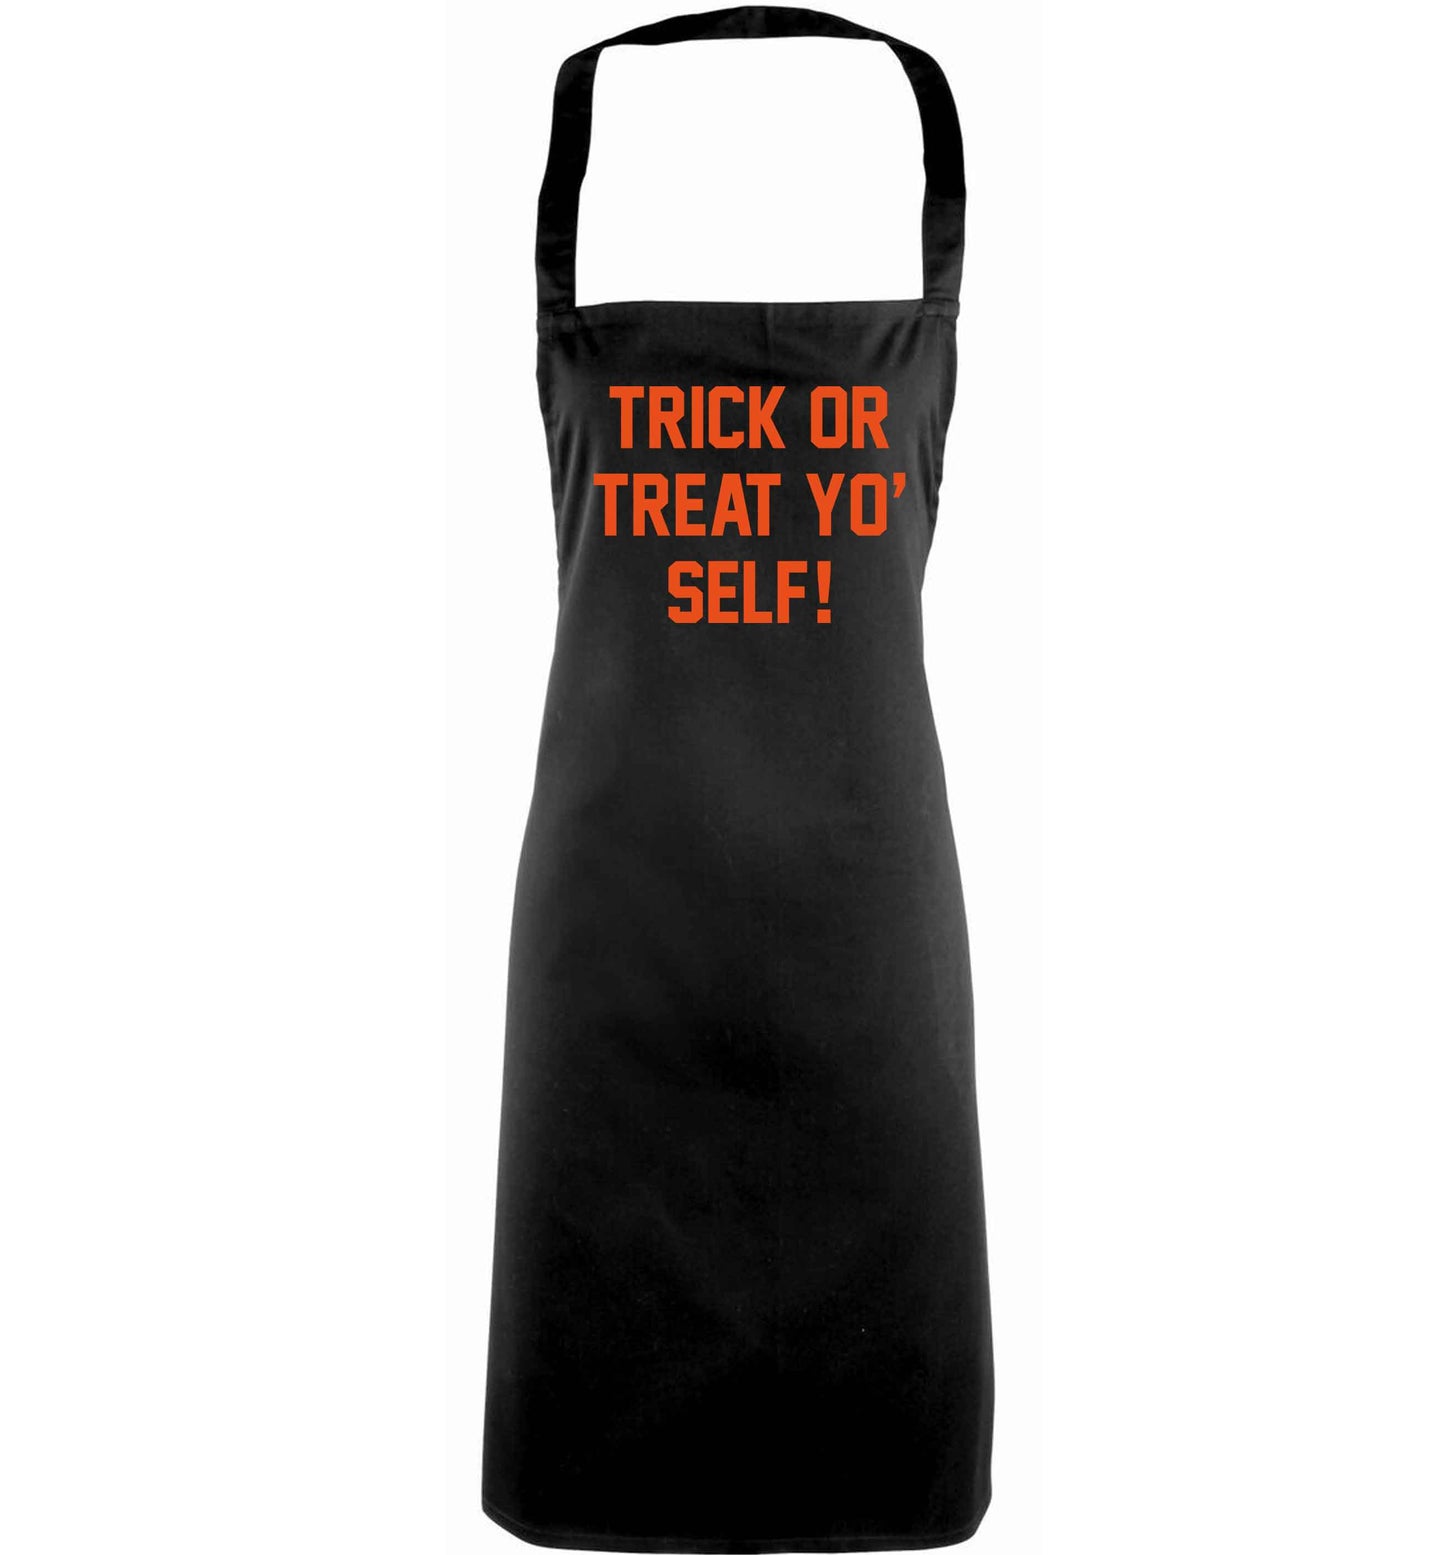 Trick or Treat Yo' Self adults black apron